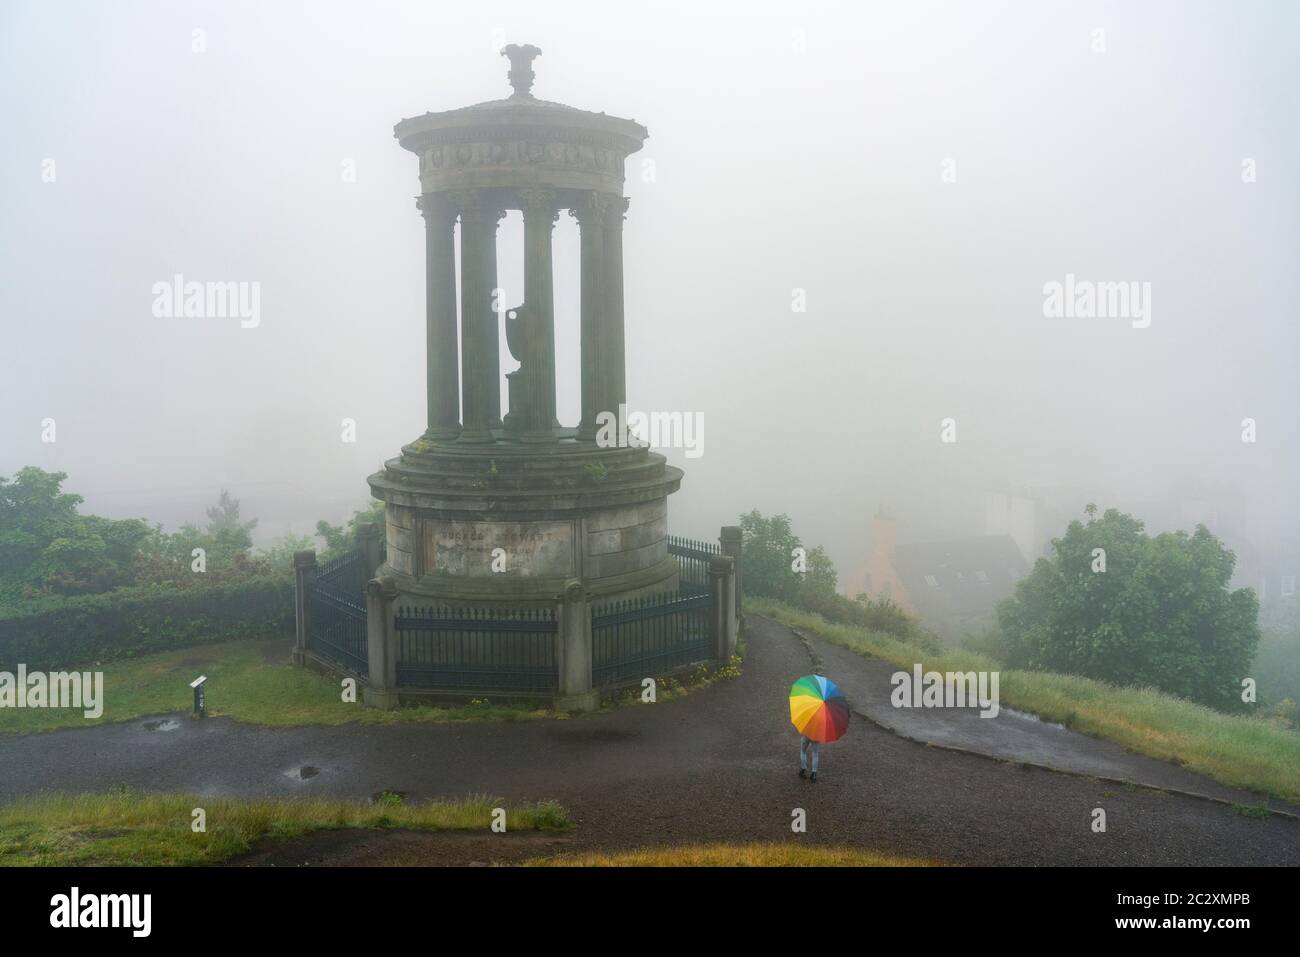 Frau mit bunten Regenschirm und Dugald Stewart Denkmal Calton Hill auf nebligen, regnerischen Tag, Edinburgh, Schottland, Großbritannien Stockfoto